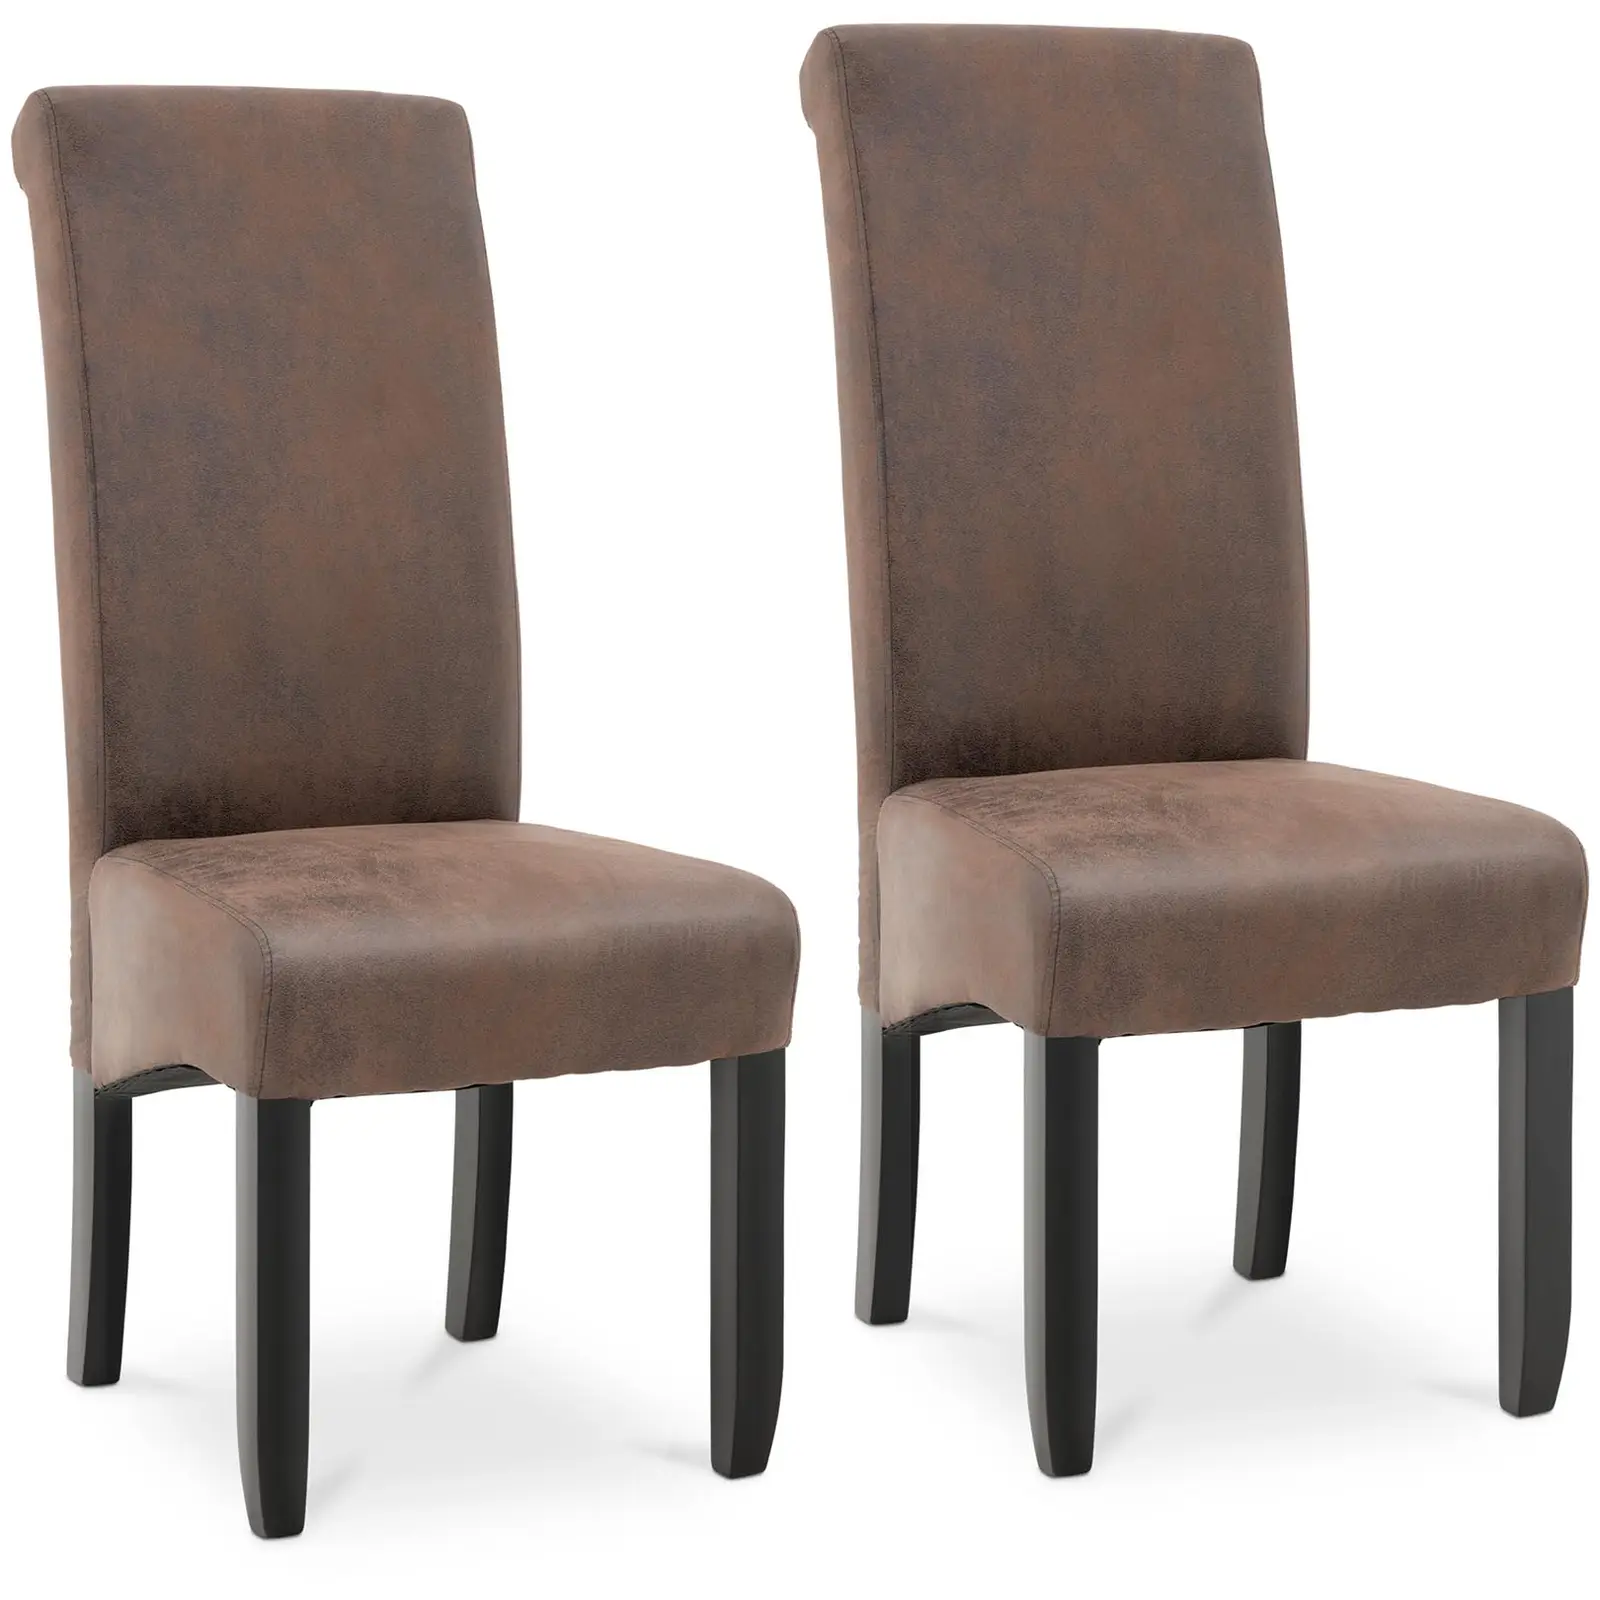 Silla tapizada - set de 2 - hasta 150 kg - asiento de 44,5 x 44 cm - marrón